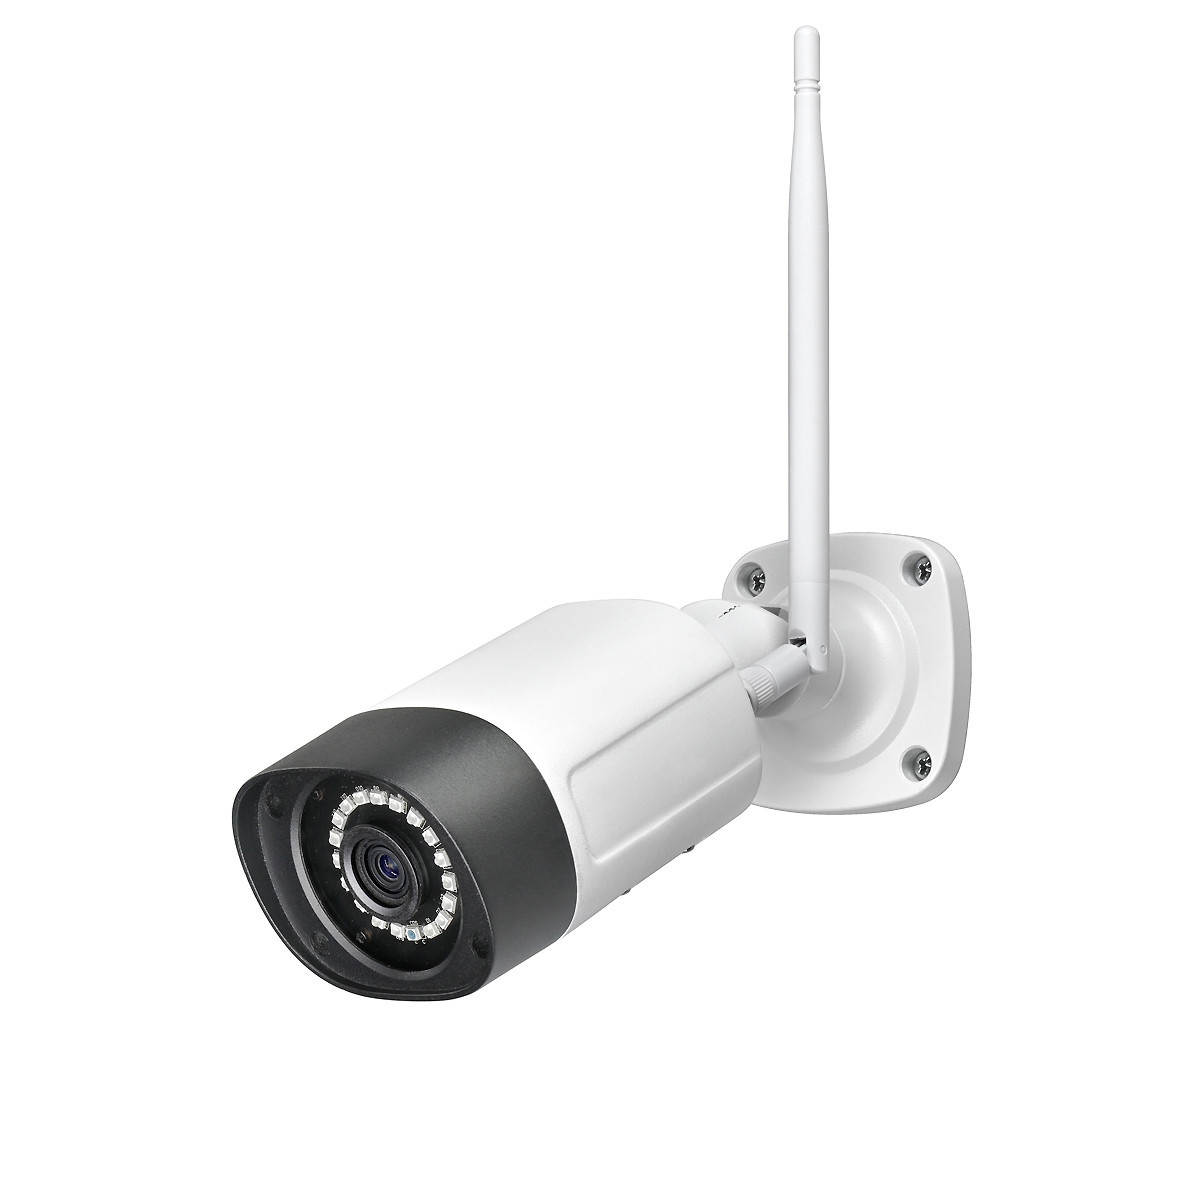 Die 4G-Überwachungskamera GK120B4G ist besonders für einen Einsatz auf Baustellen oder Orte ohne WLAN geeignet. 